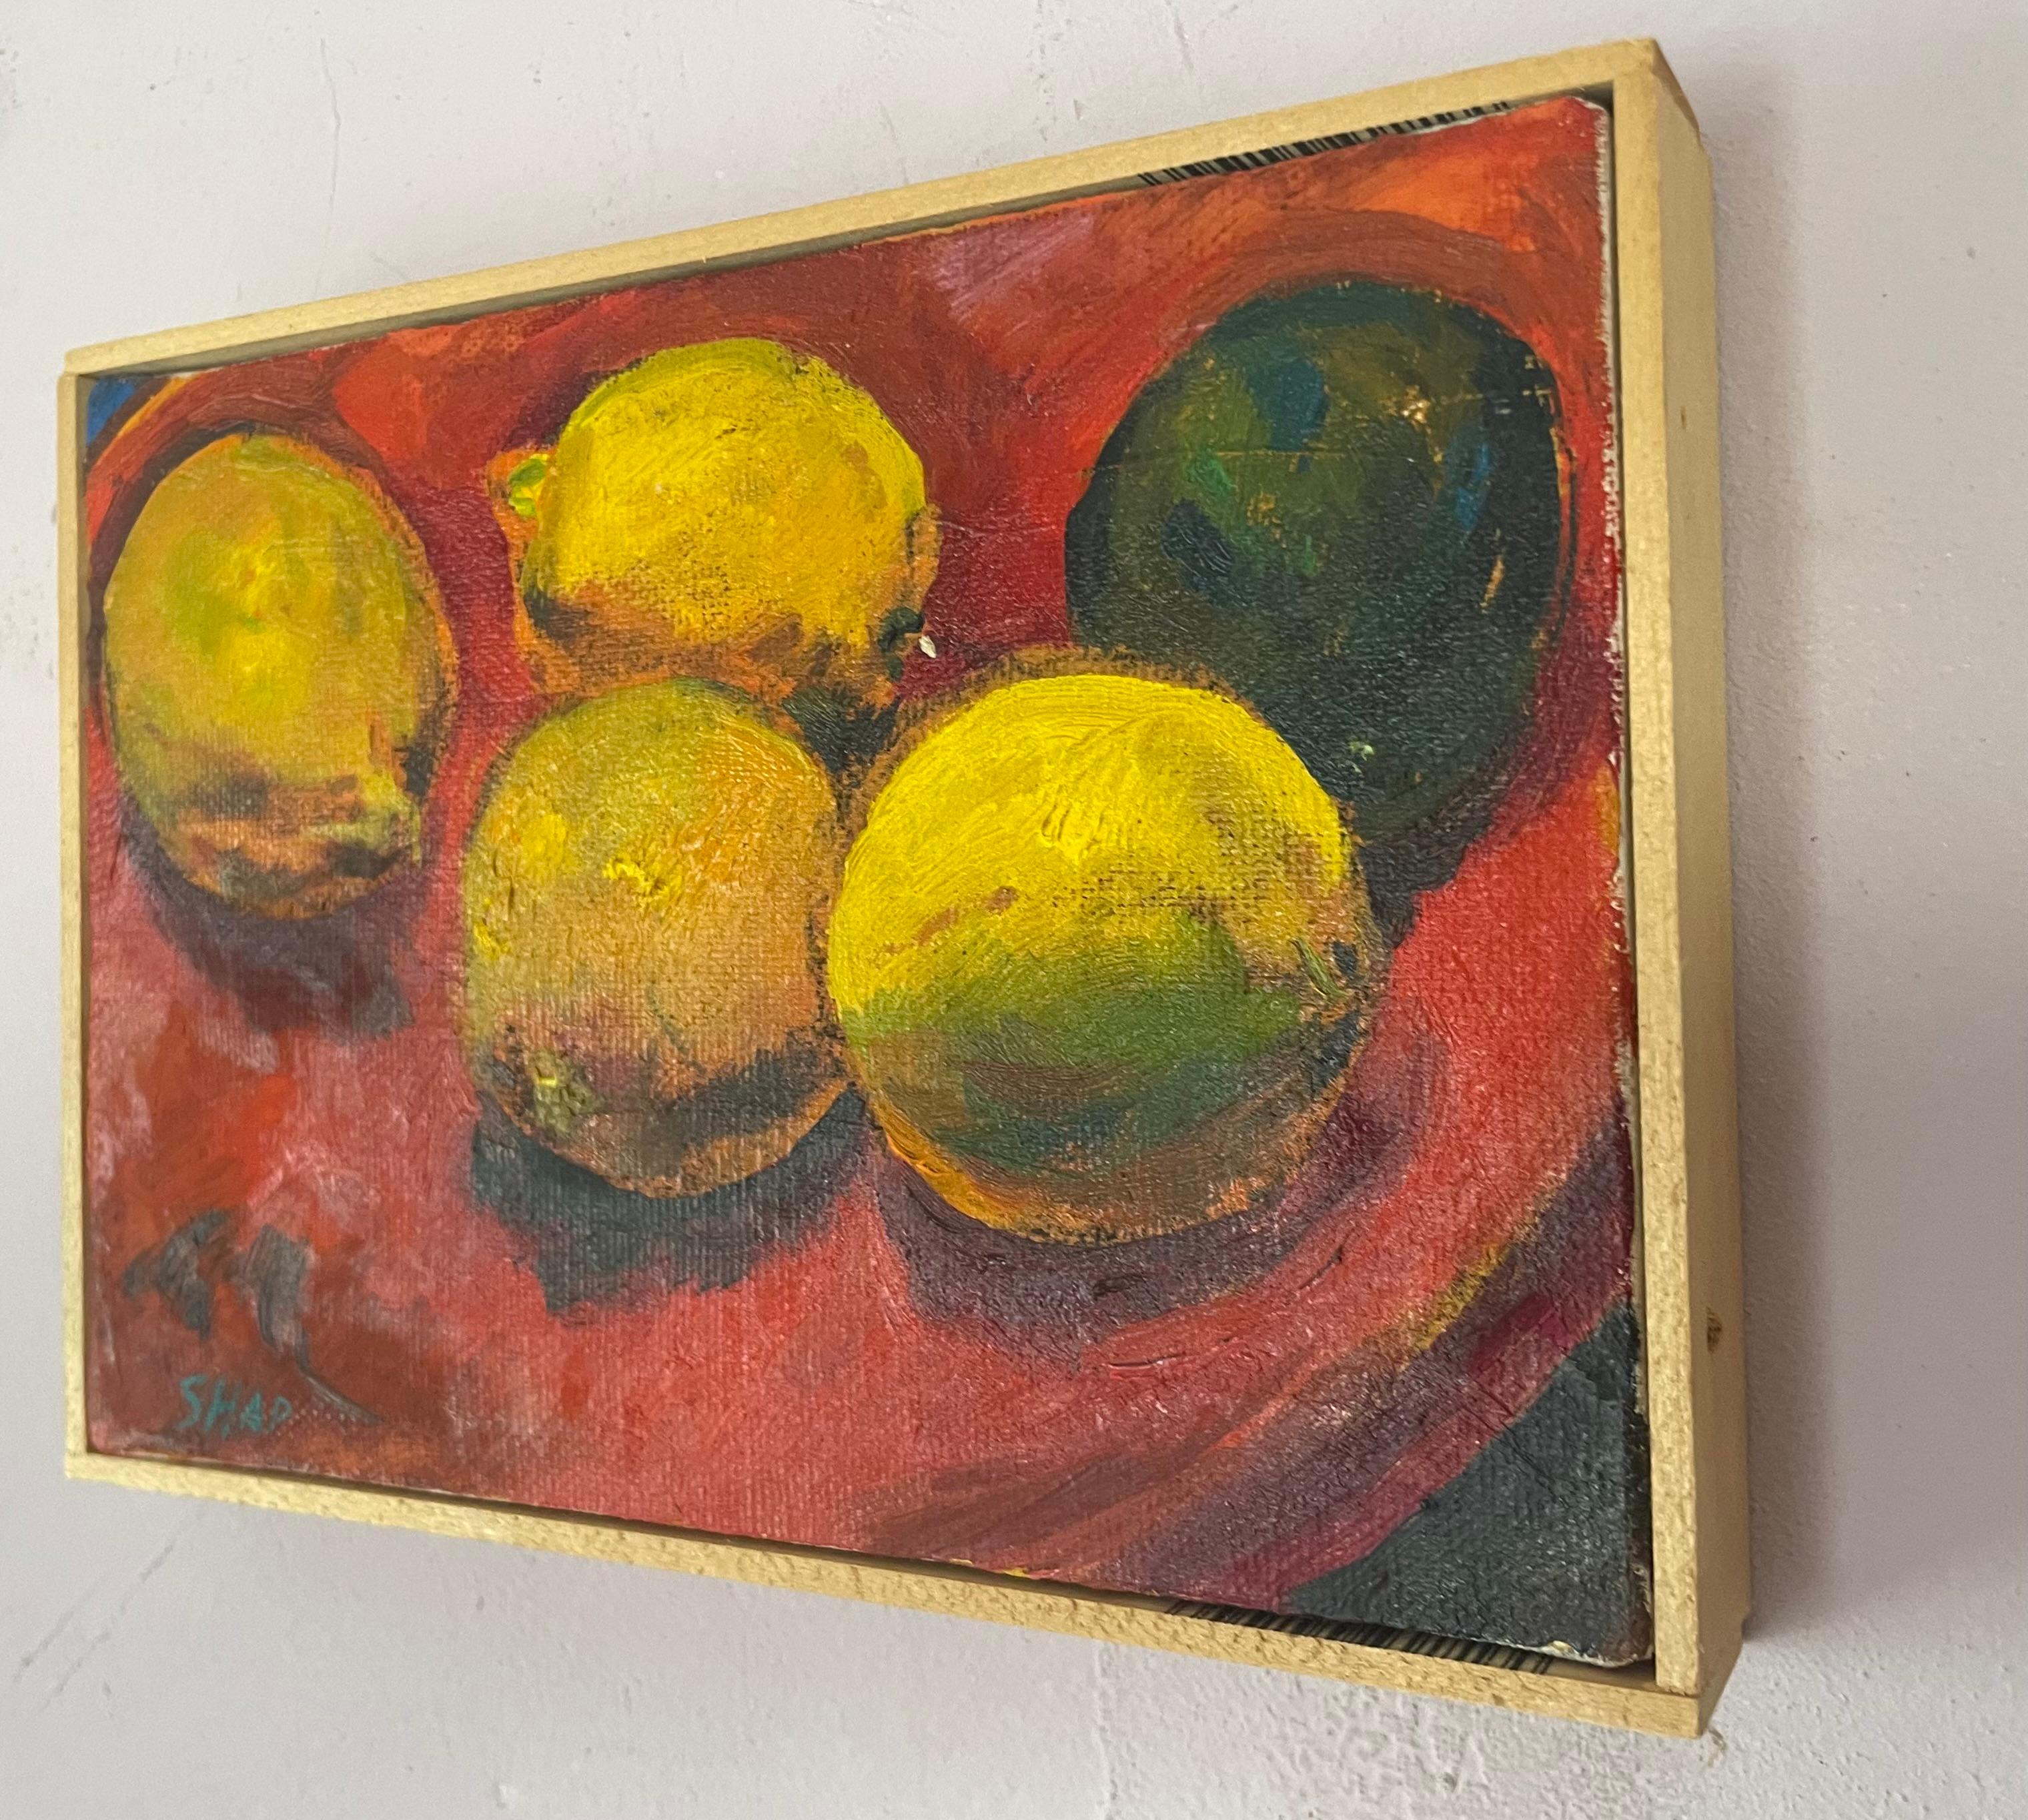 Zitronen und limetten (Braun), Still-Life Painting, von Ronald Shap